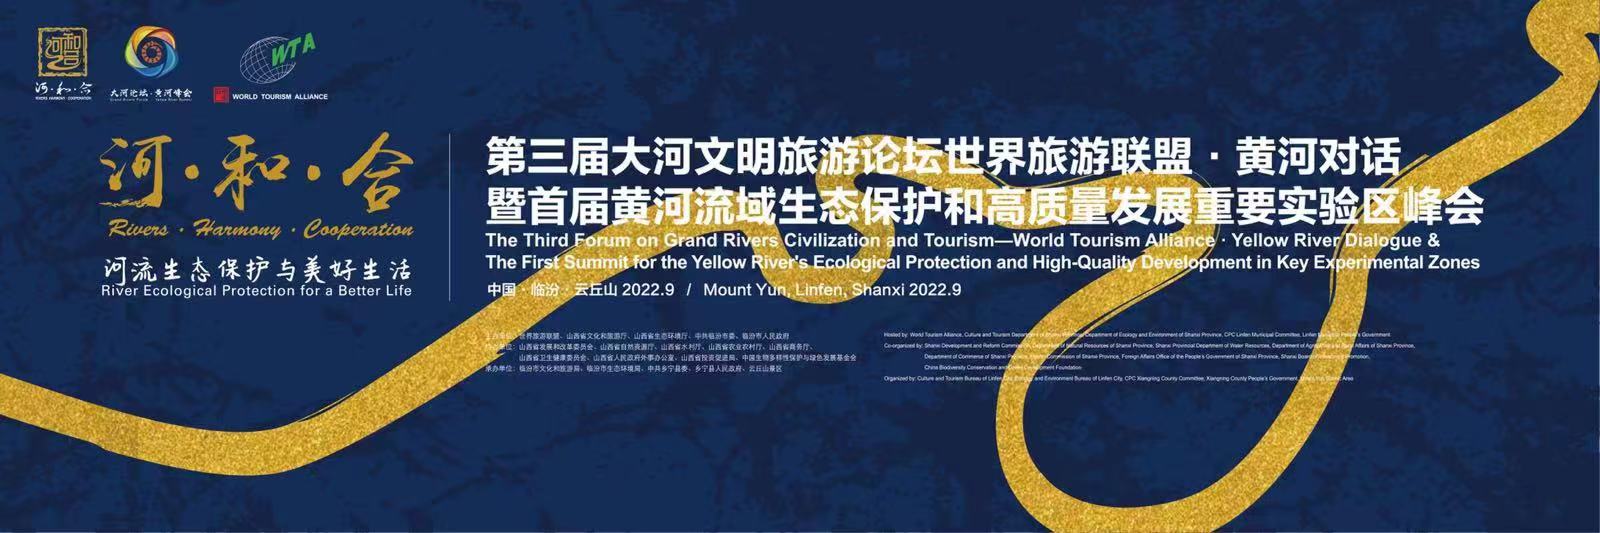 「大河論壇·黃河峰會」即將於9月17日—19日在臨汾舉辦